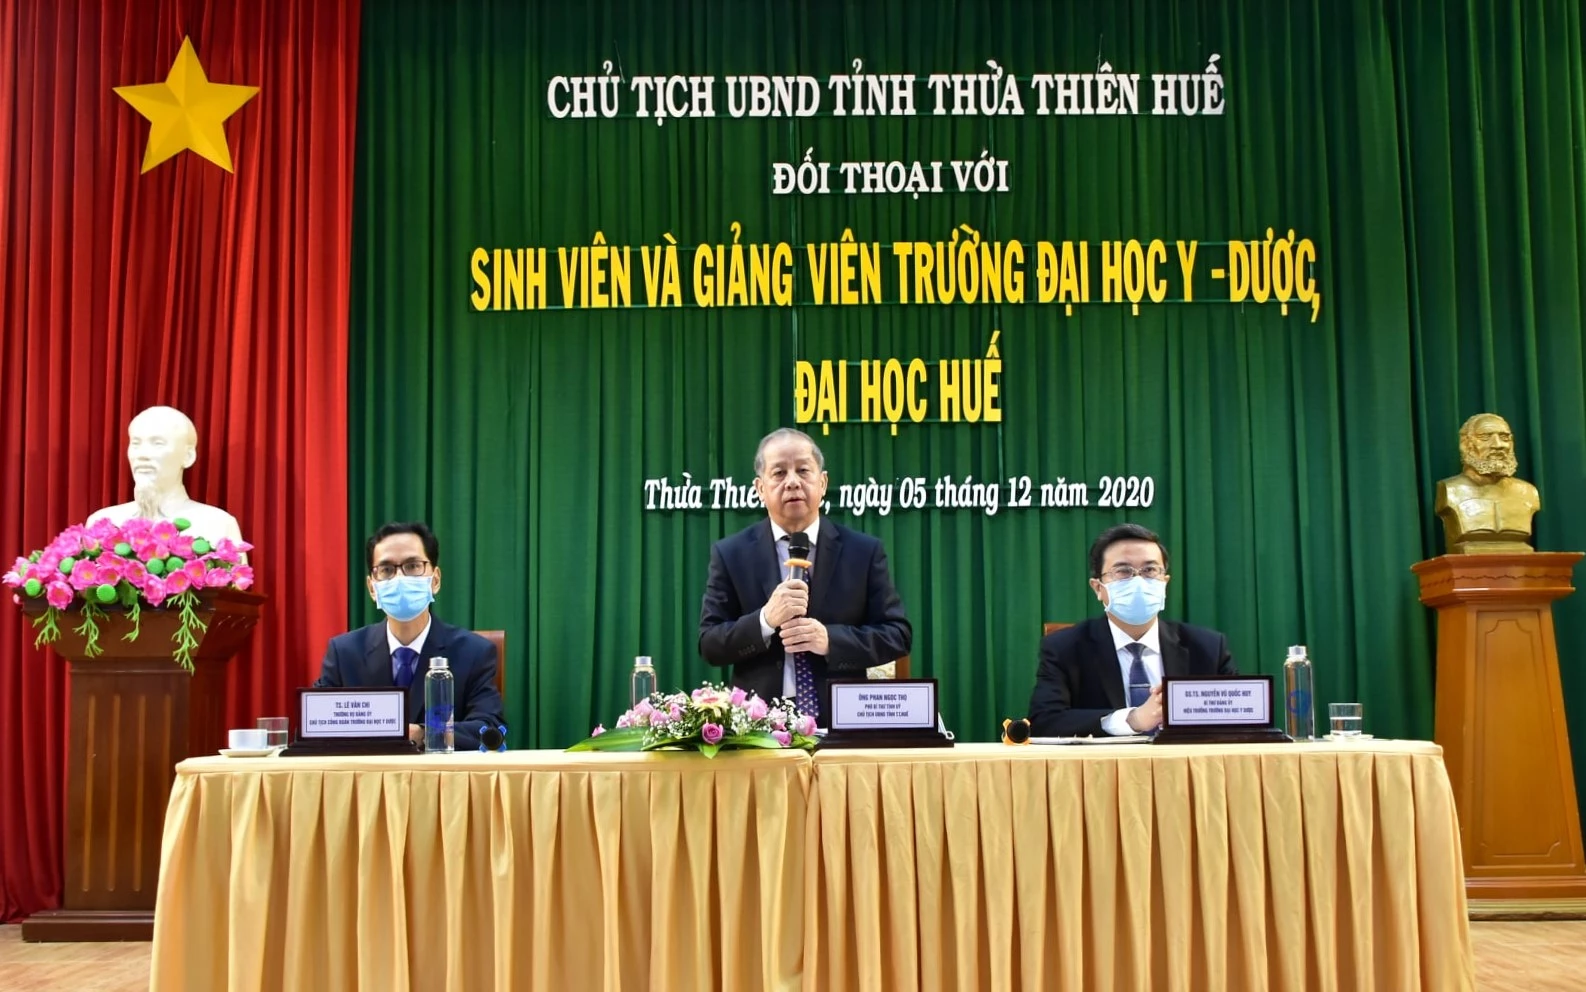 Chủ tịch UBND tỉnh Thừa Thiên Huế Phan Ngọc Thọ phát biểu “mở lời” trong buổi đối thoại với hơn 300 giảng viên, sinh viên Trường Đại học Y - Dược Huế.